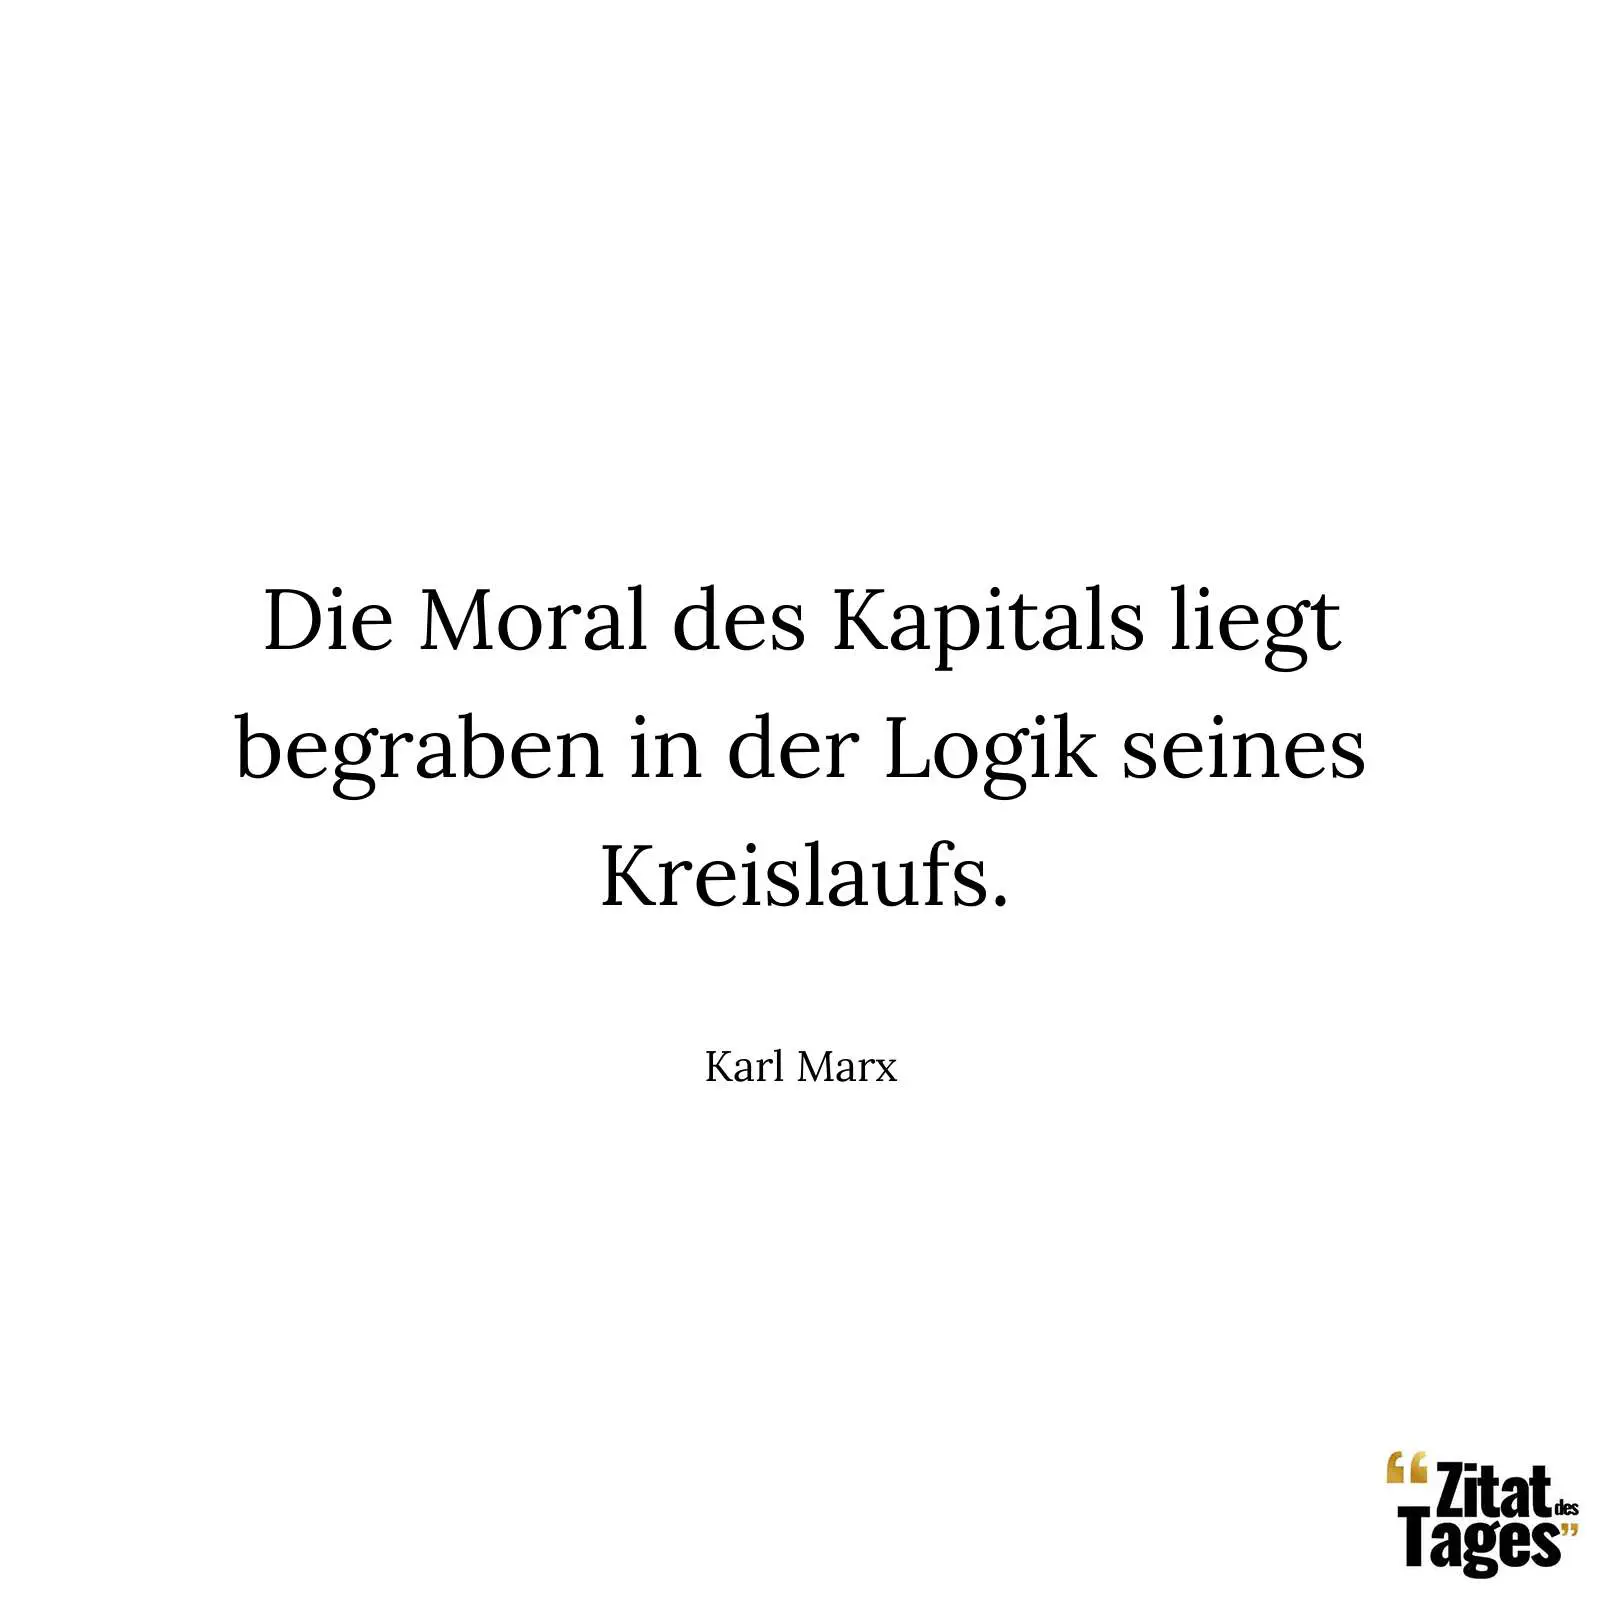 Die Moral des Kapitals liegt begraben in der Logik seines Kreislaufs. - Karl Marx